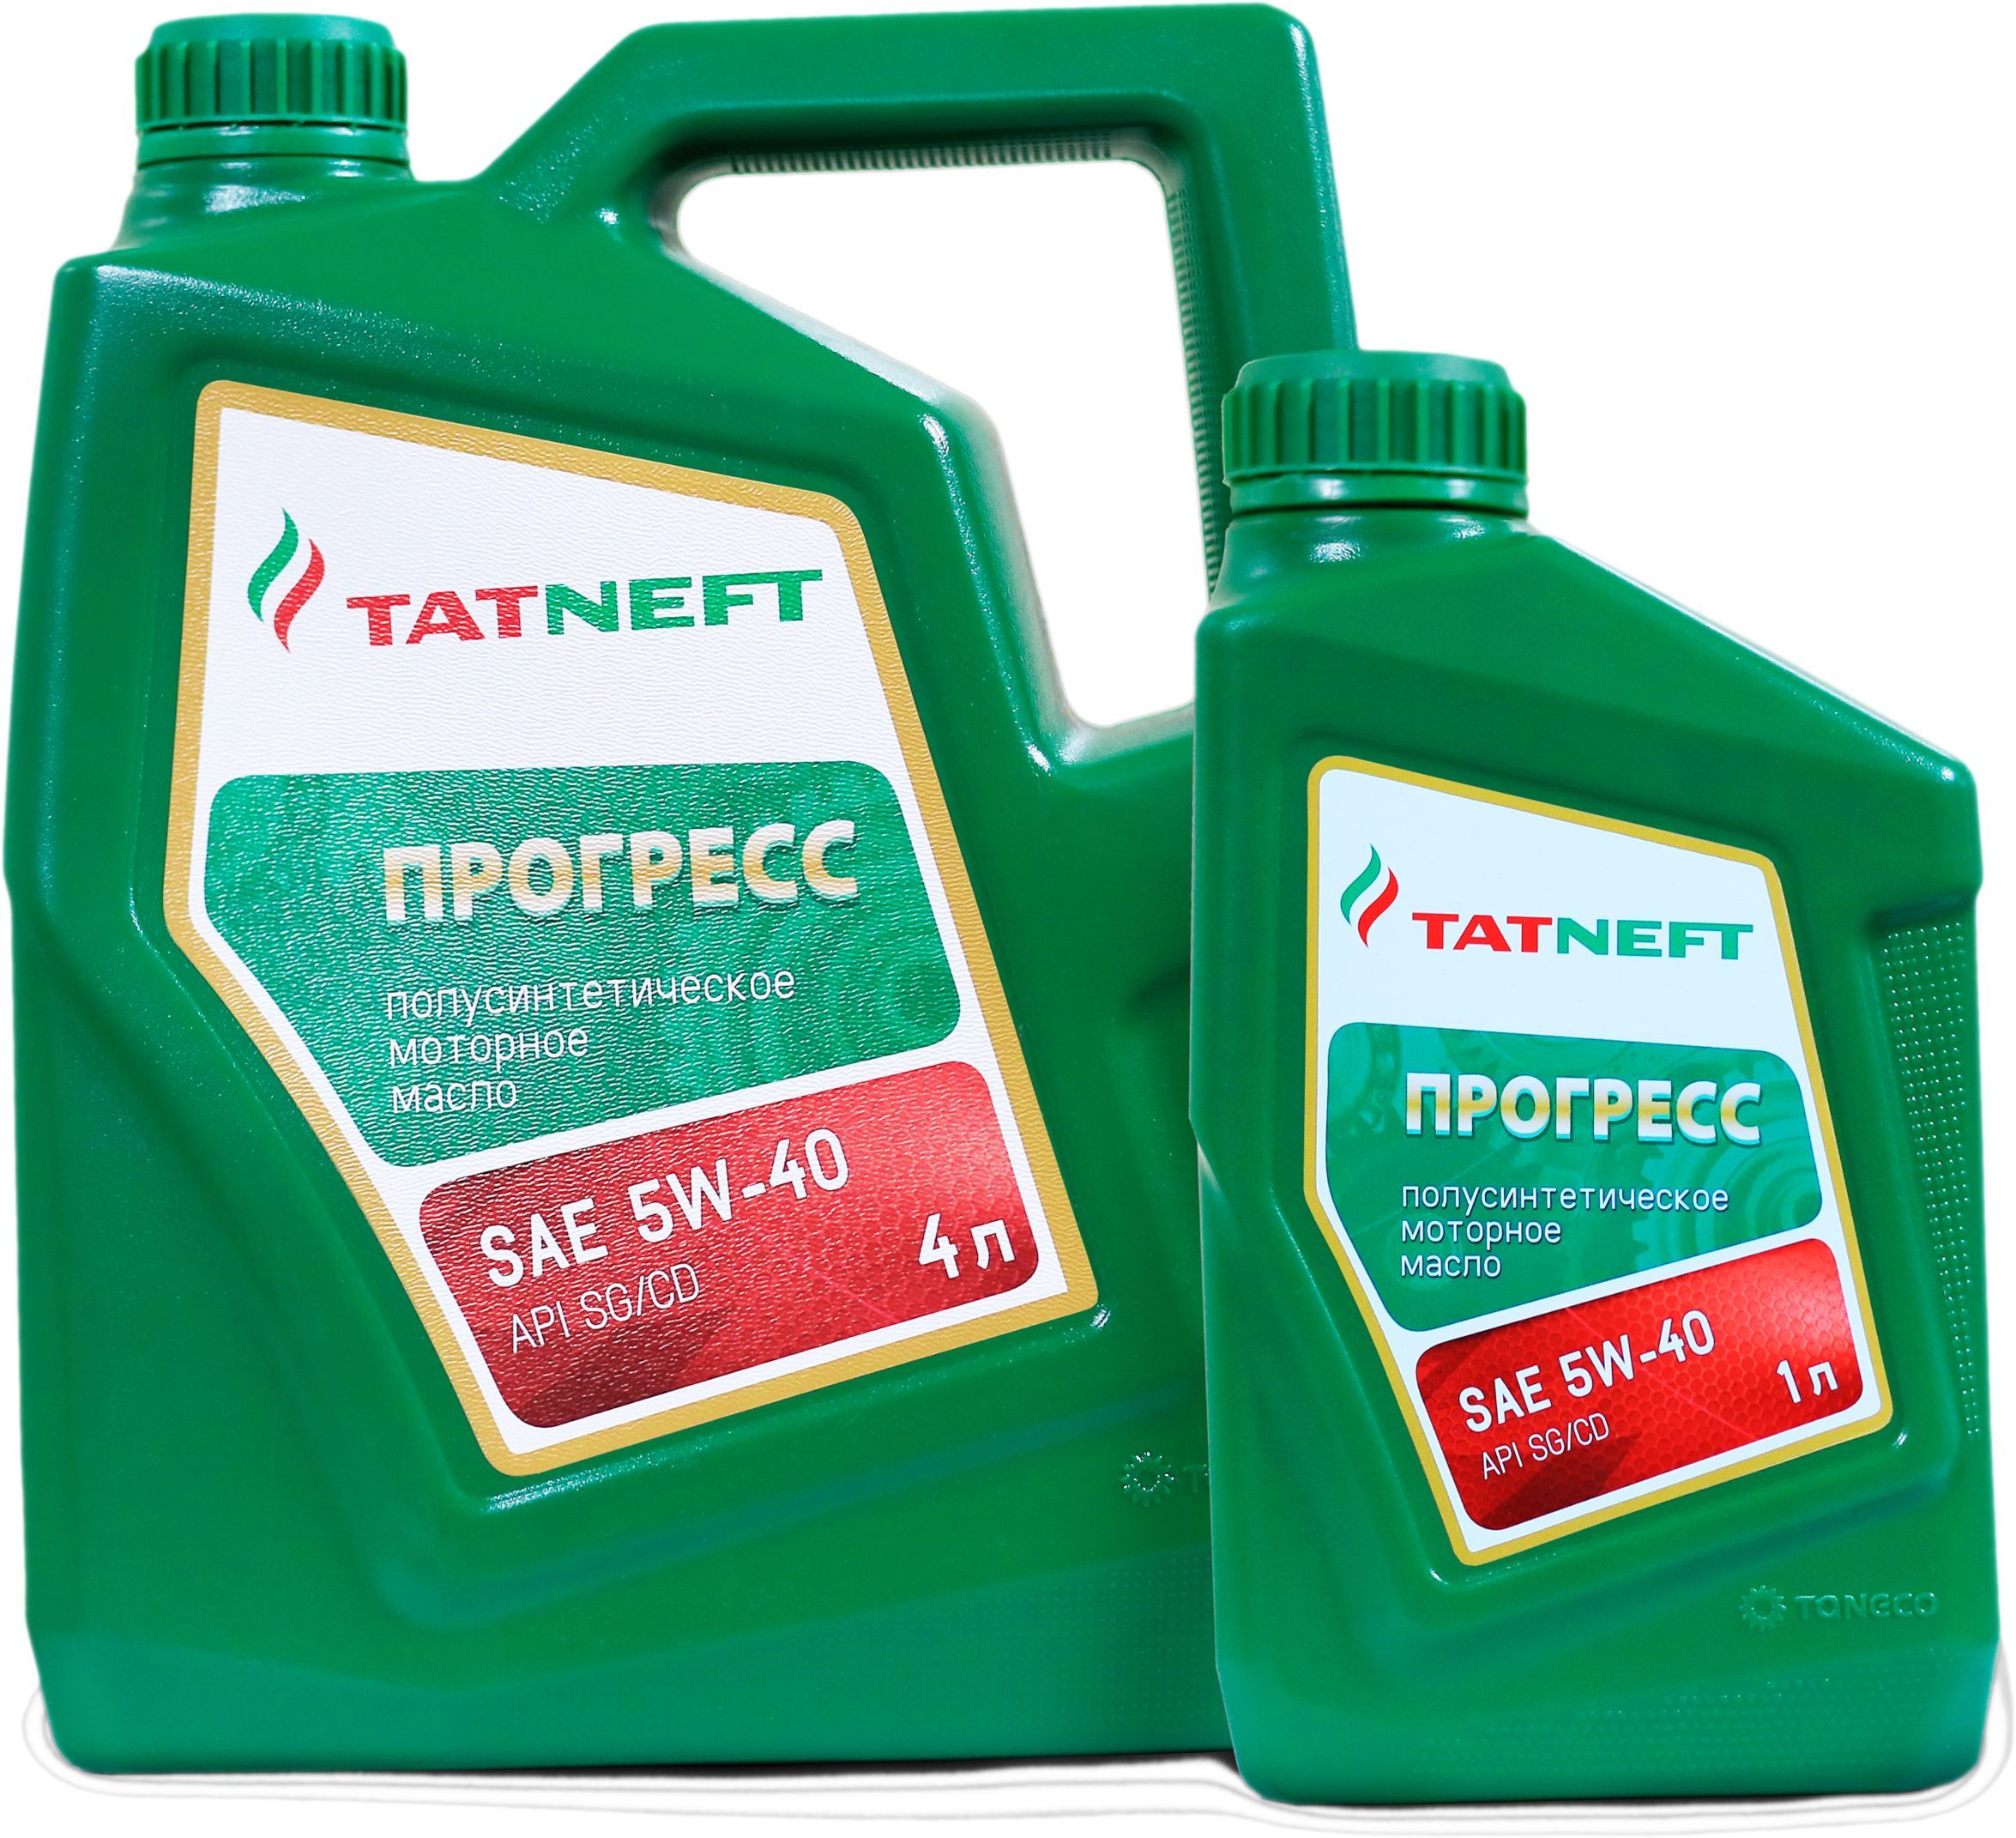  моторное TATNEFT Прогресс 5W-40 Полусинтетическое -  в .